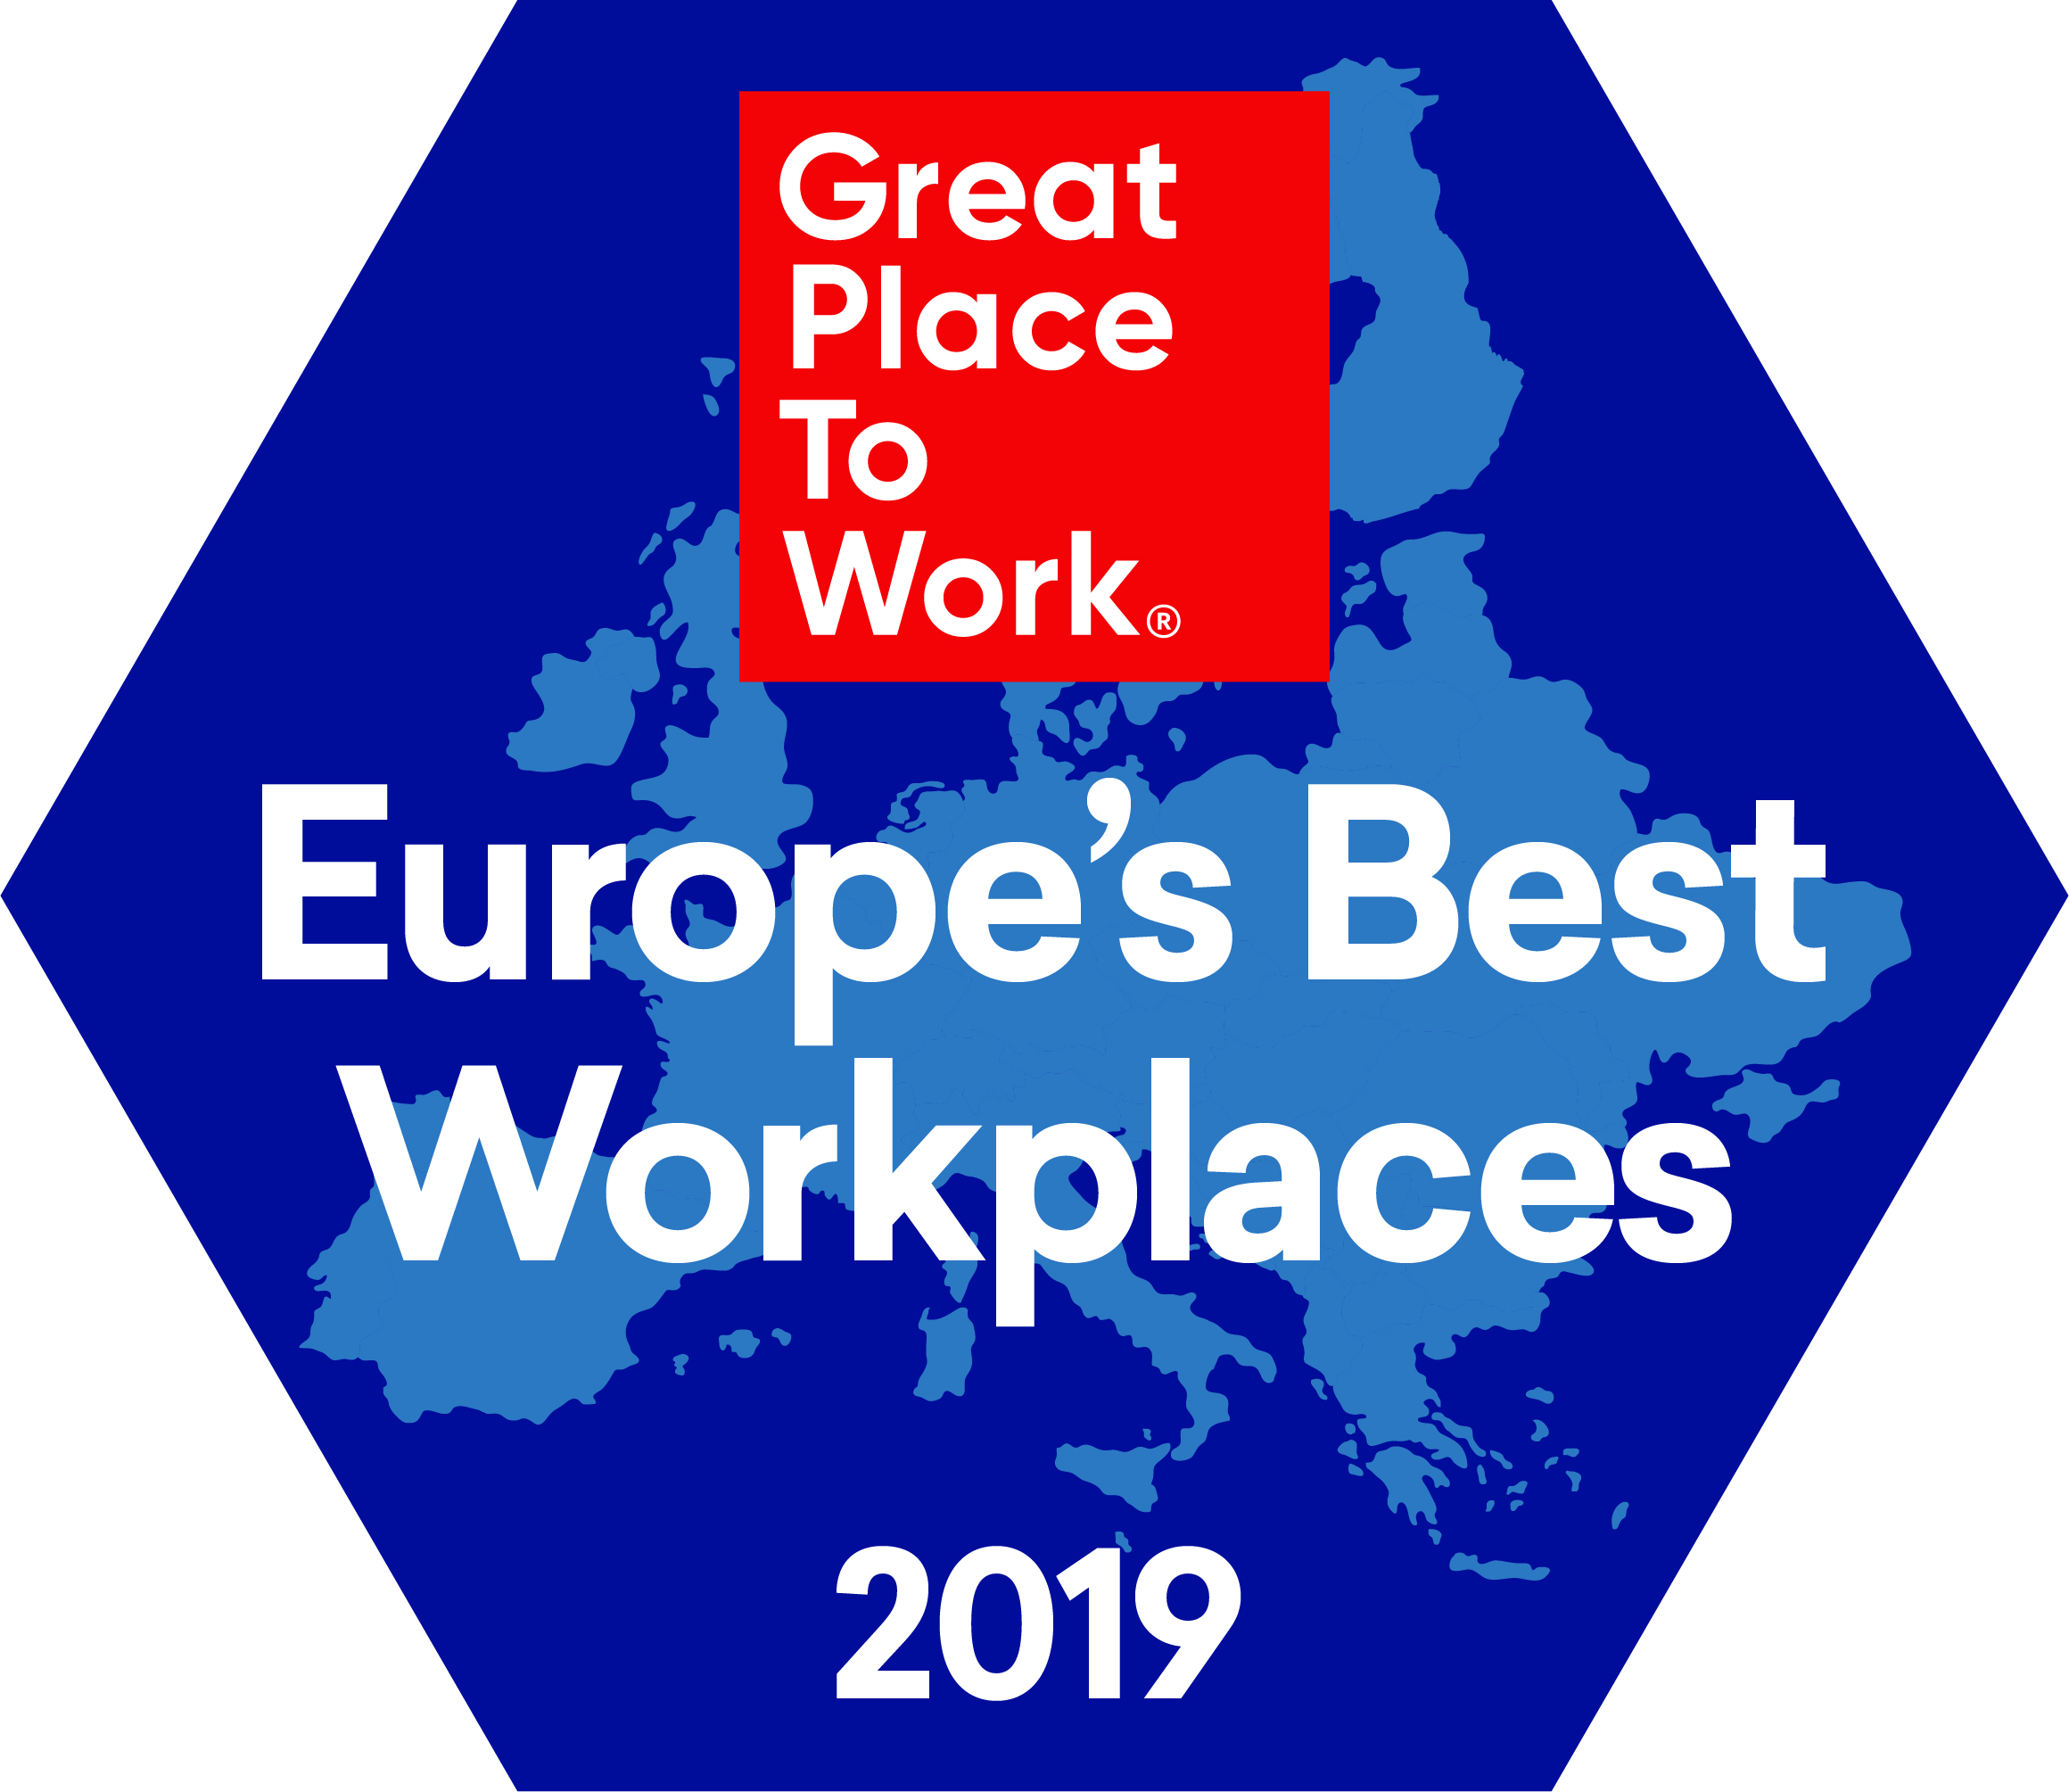 Για 5η χρονιά, η AbbVie αναδεικνύεται 4η ανάμεσα στις εταιρείες  με το καλύτερο εργασιακό περιβάλλον στην Ευρώπη